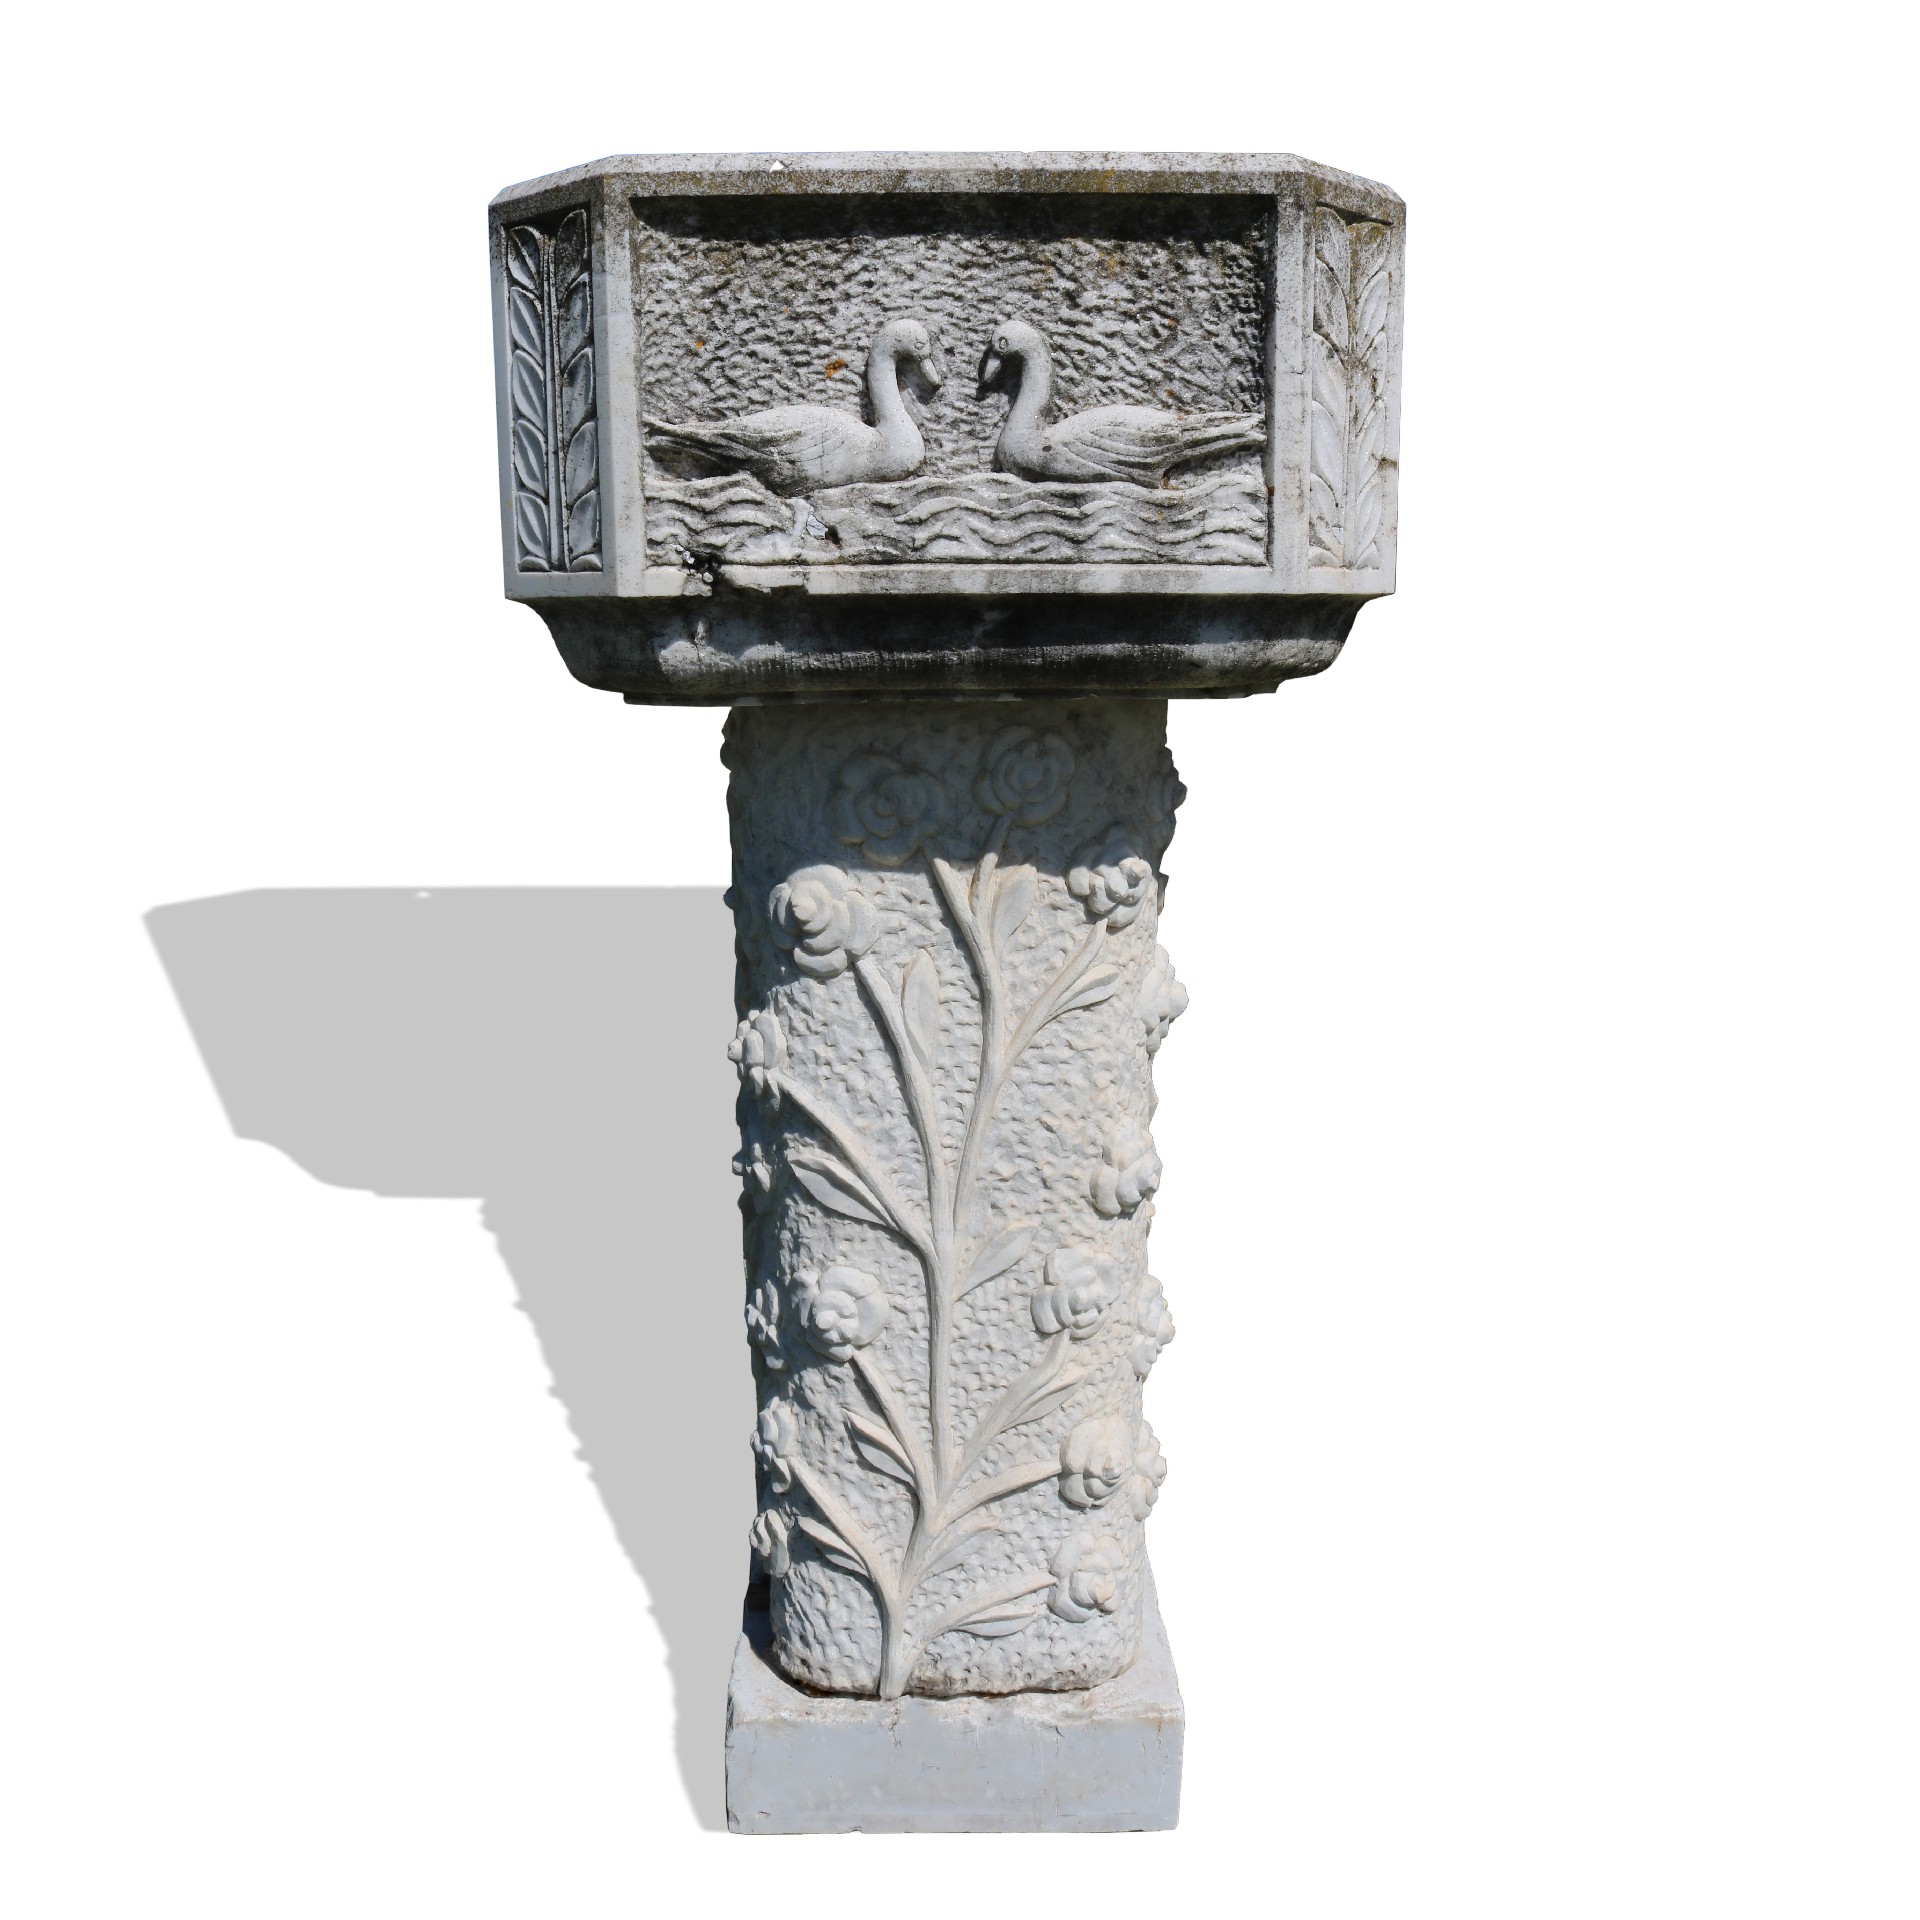 Antica fontana in marmo - Fontane Antiche - Arredo Giardino - Prodotti - Antichità Fiorillo